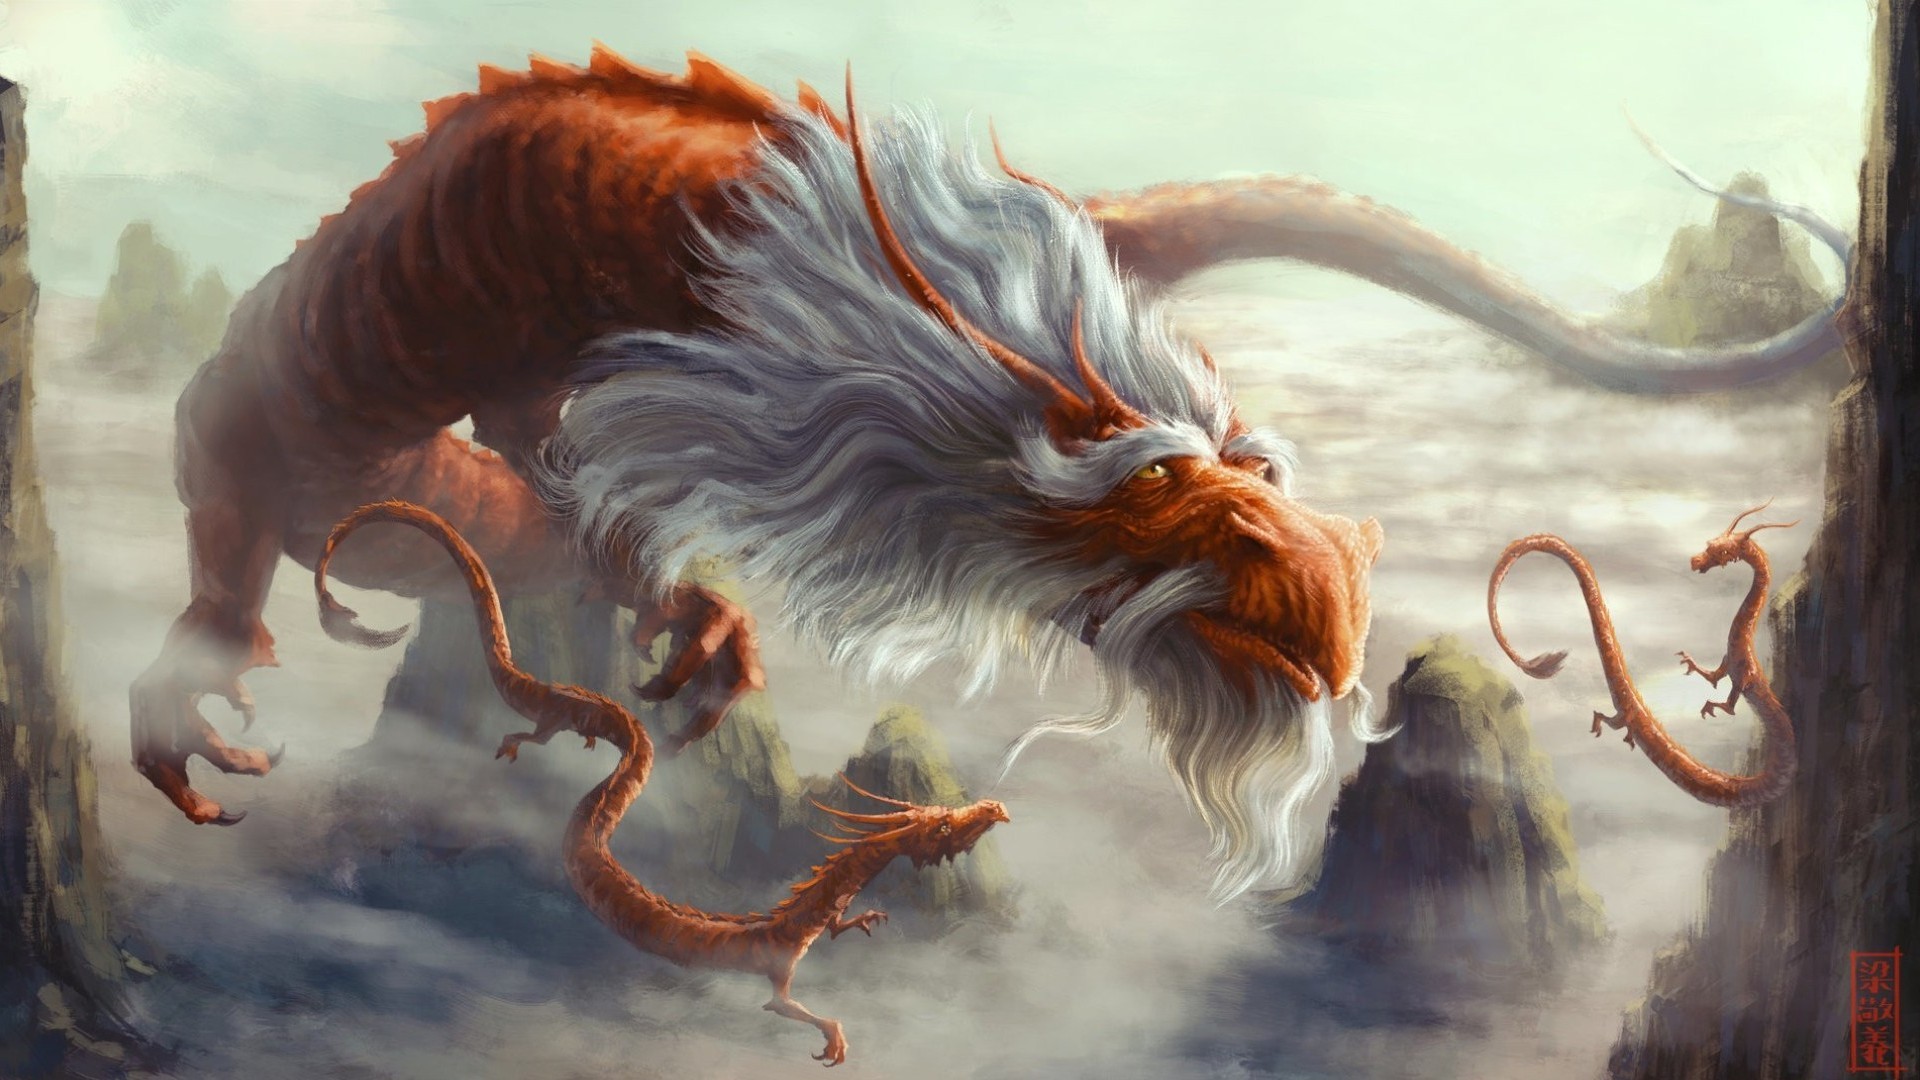 dragon fondos de pantalla hd,cg artwork,mitología,personaje de ficción,ilustración